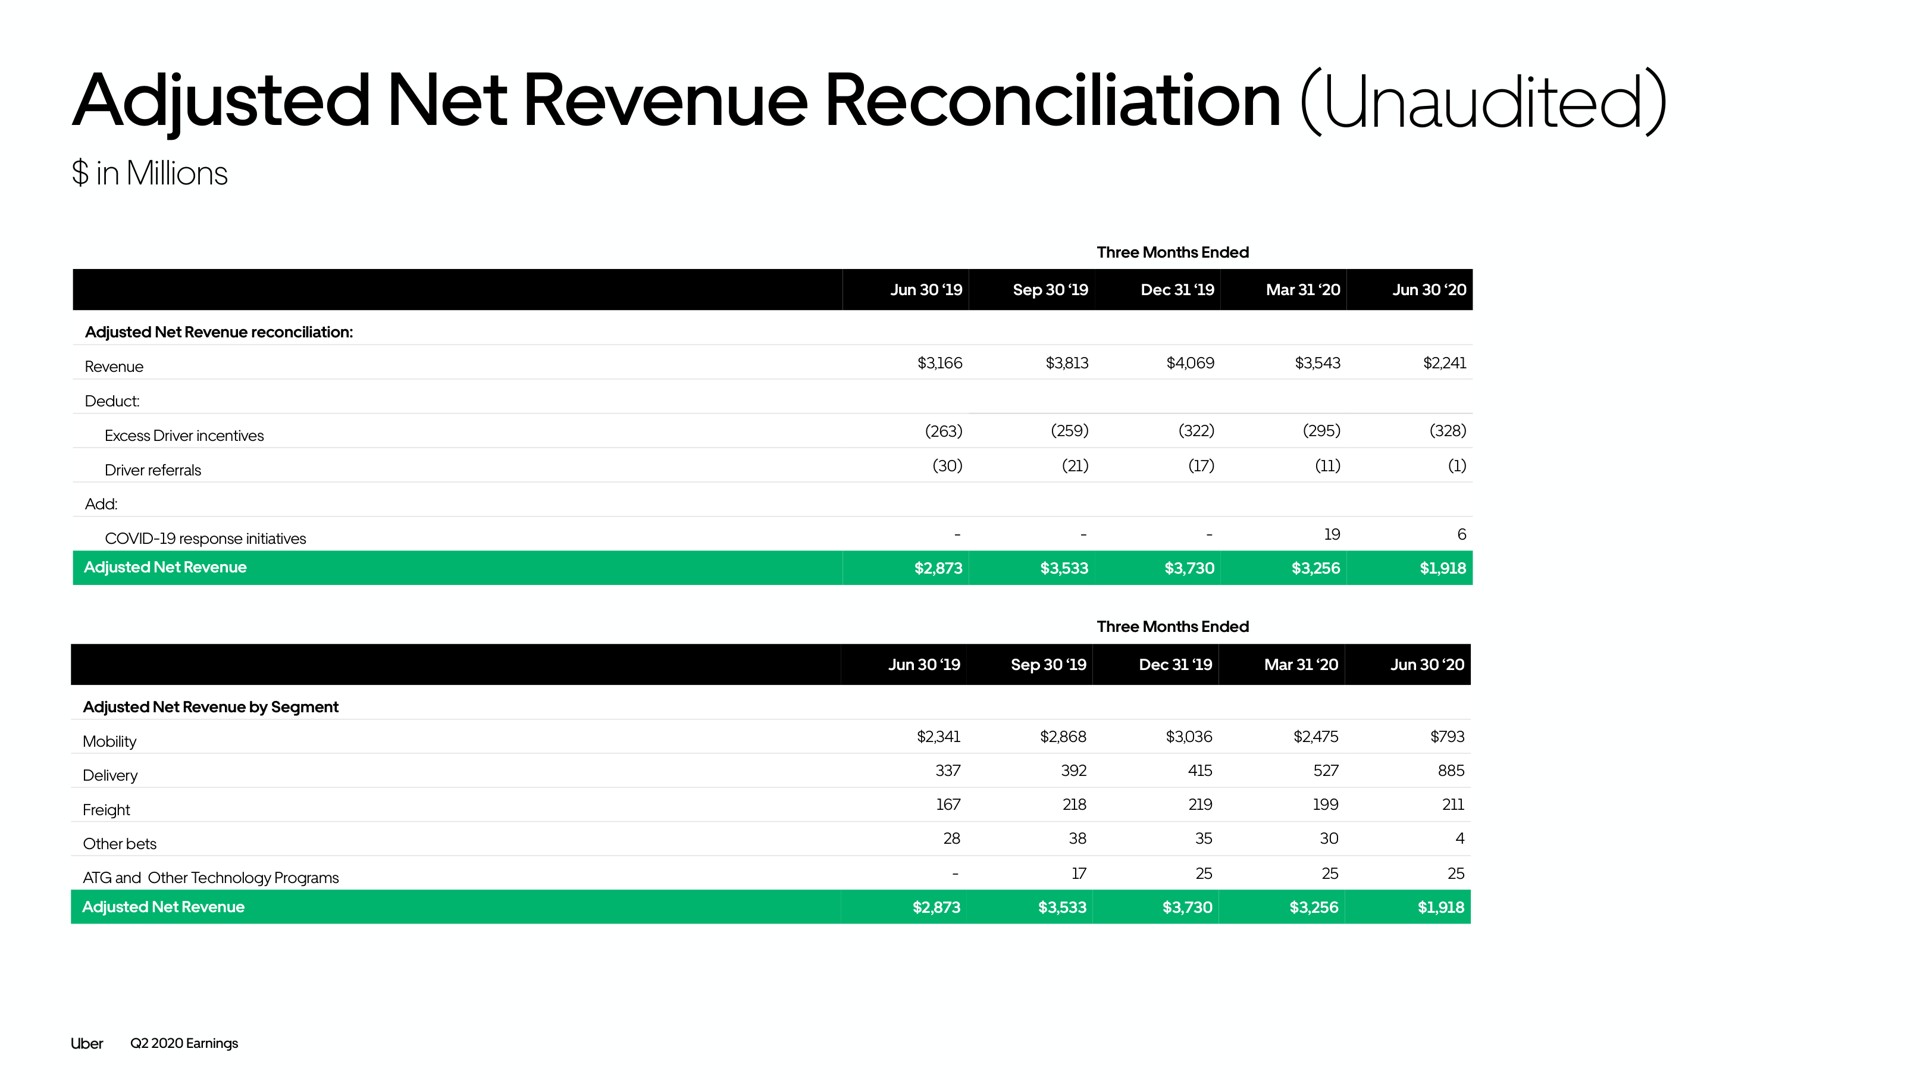 adjusted net revenue reconciliation unaudited | Uber